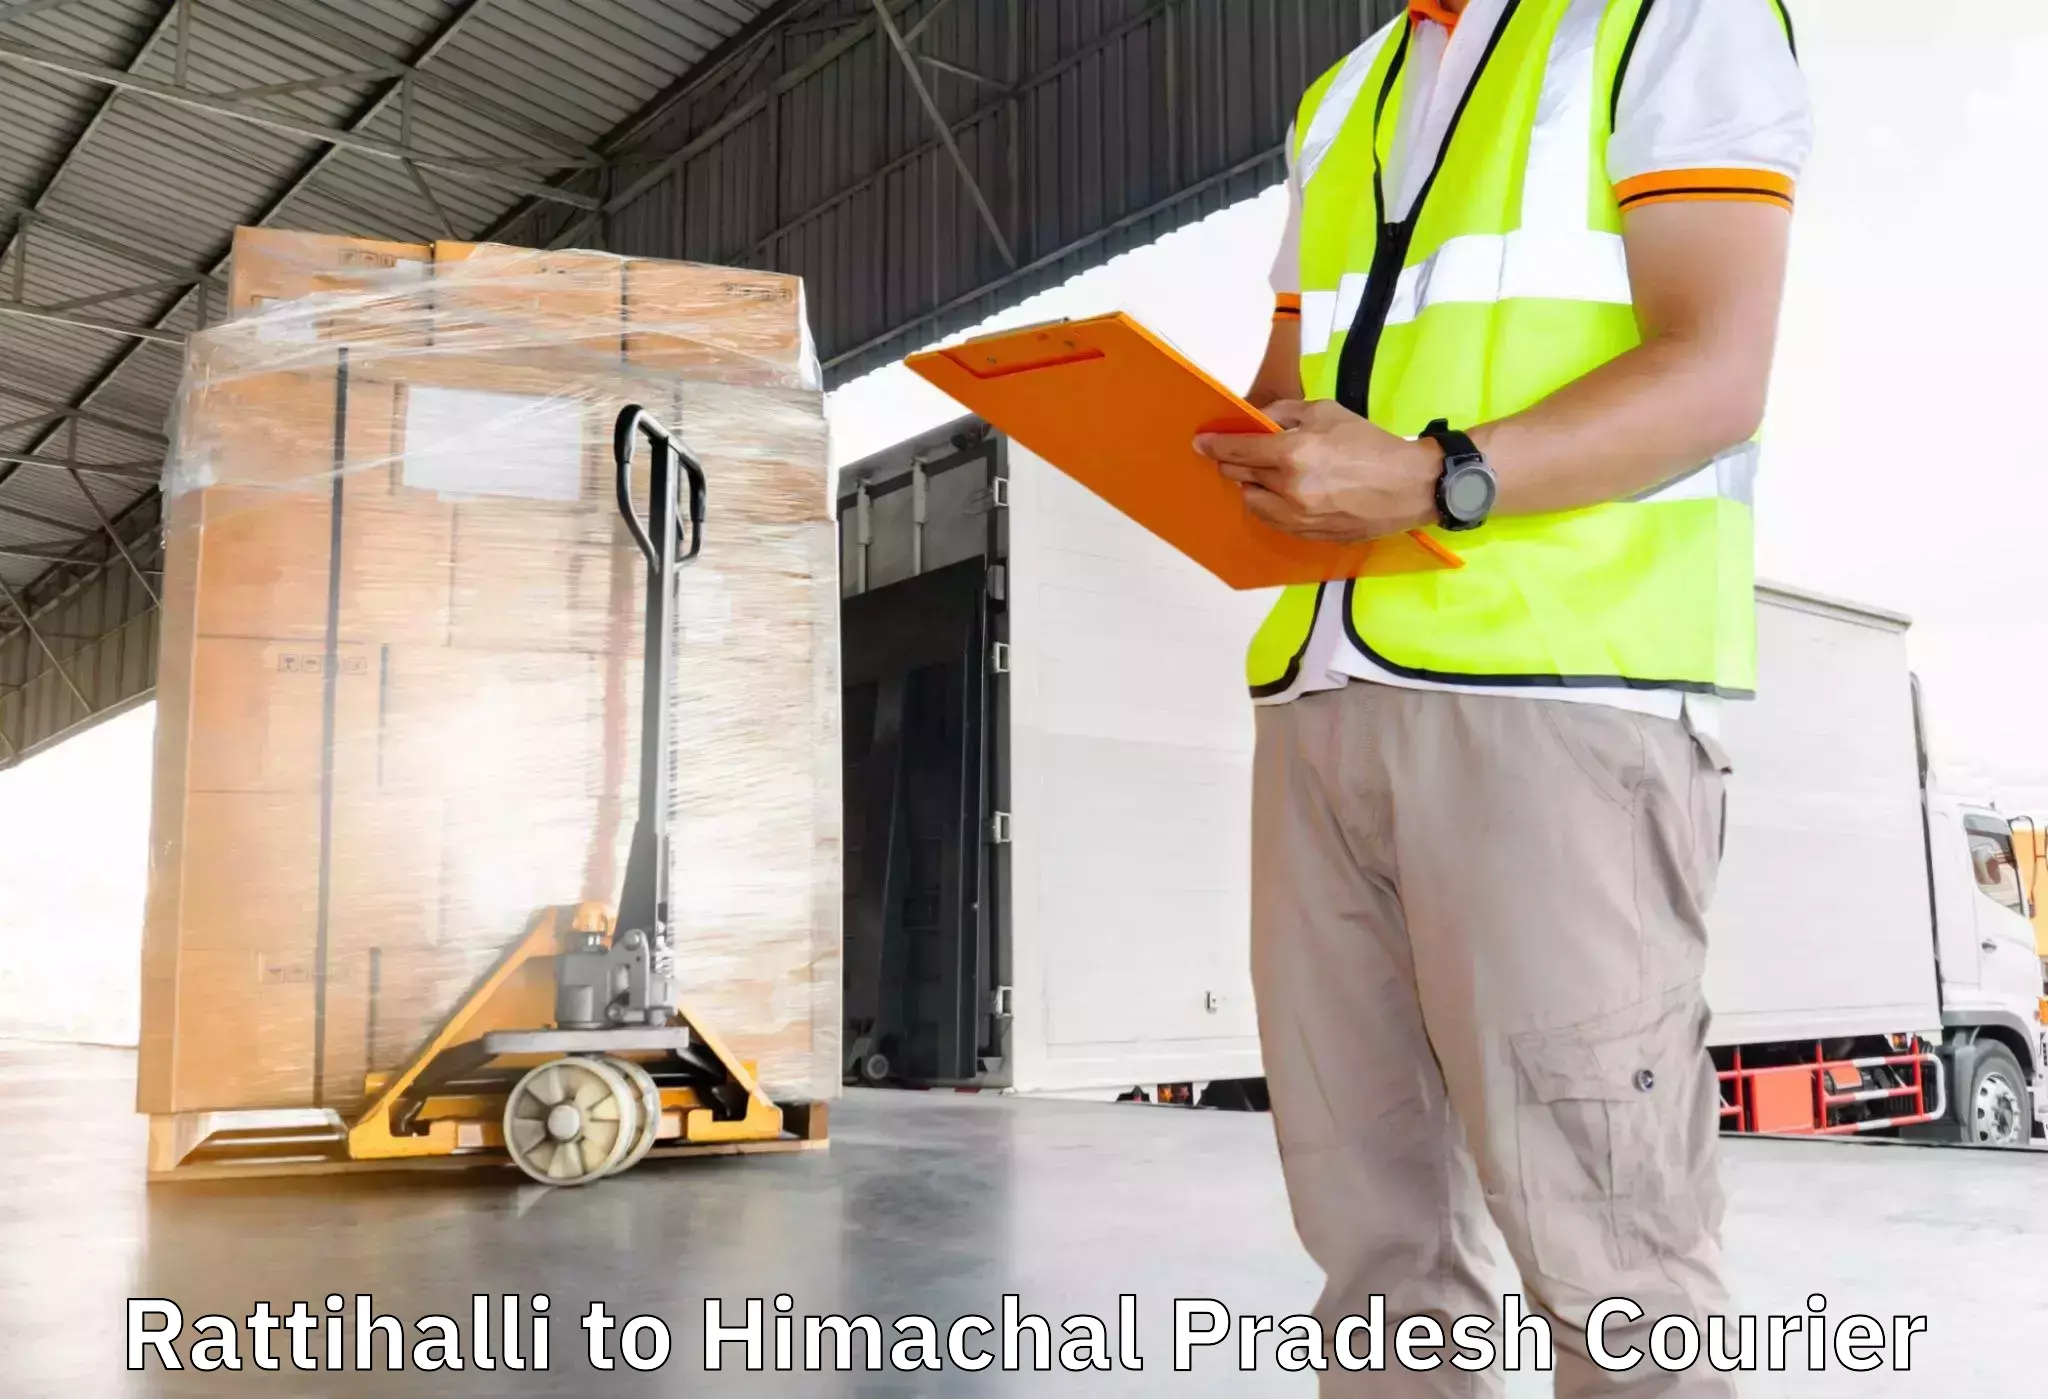 Moving and packing experts Rattihalli to Kachhera